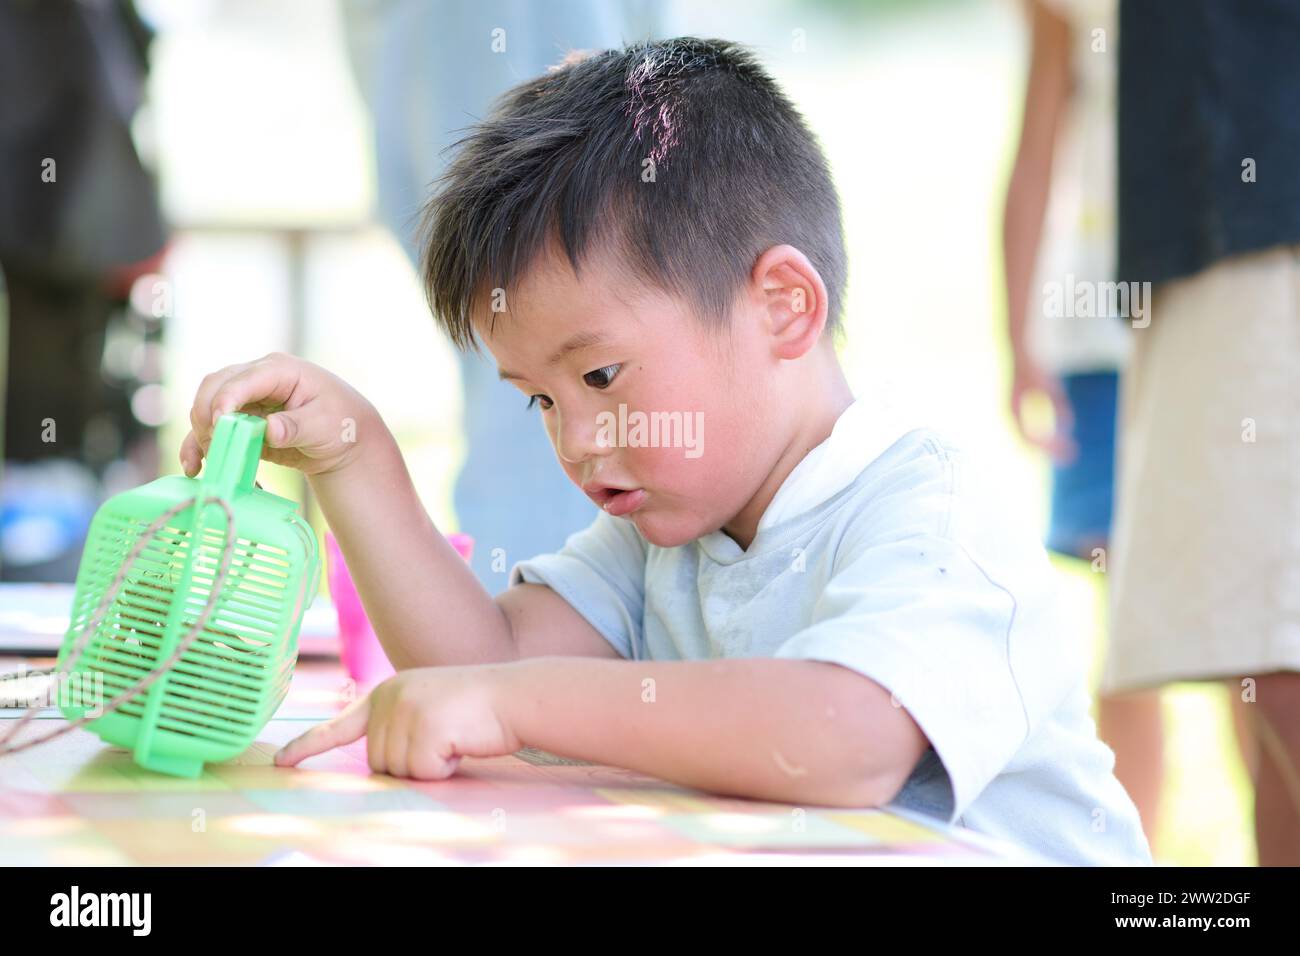 Ein kleiner Junge, der mit einem grünen Plastikspielzeug spielt Stockfoto